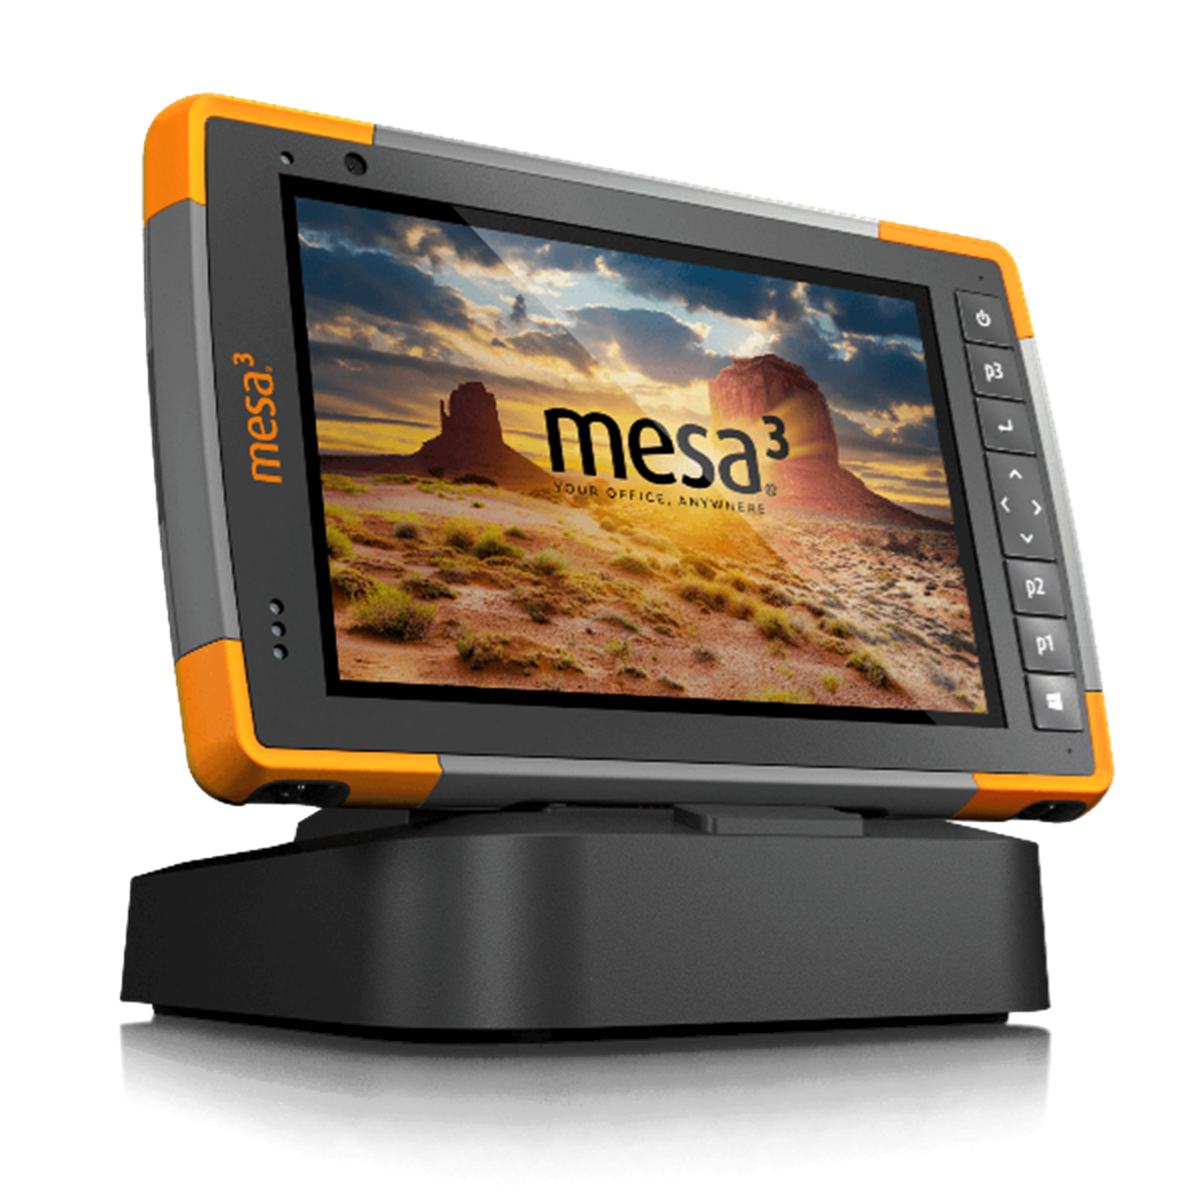 Mesa 3 (Android)